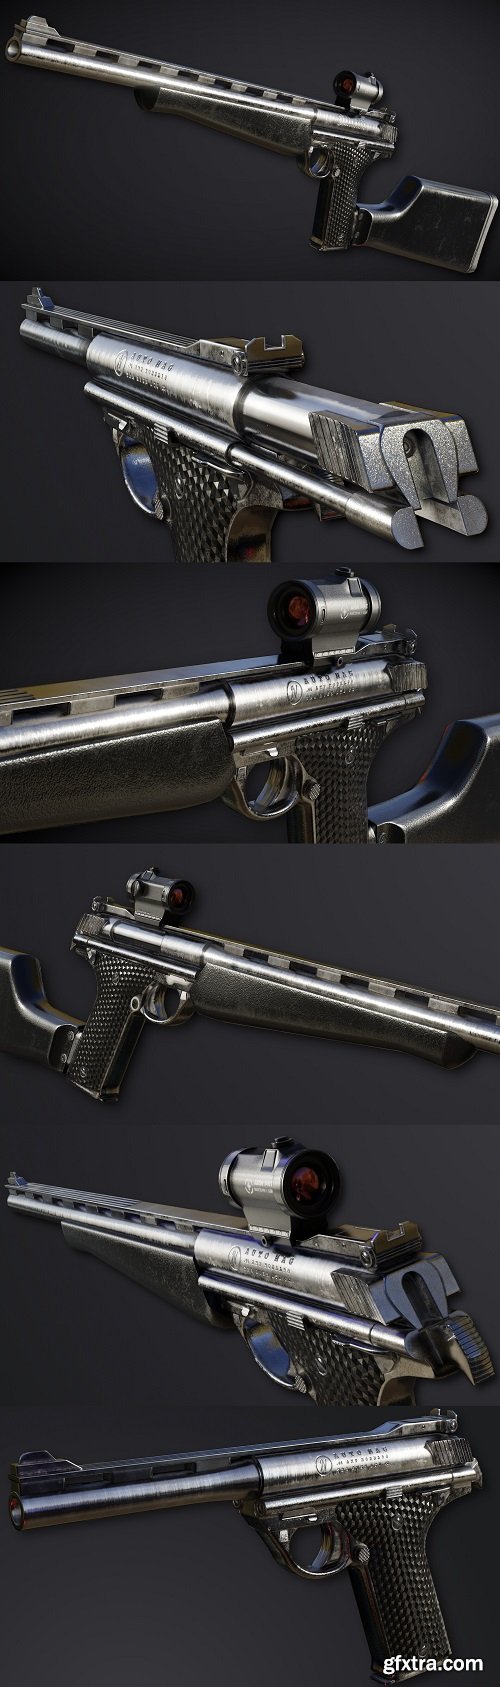 AutoMag Pistol 3D Model